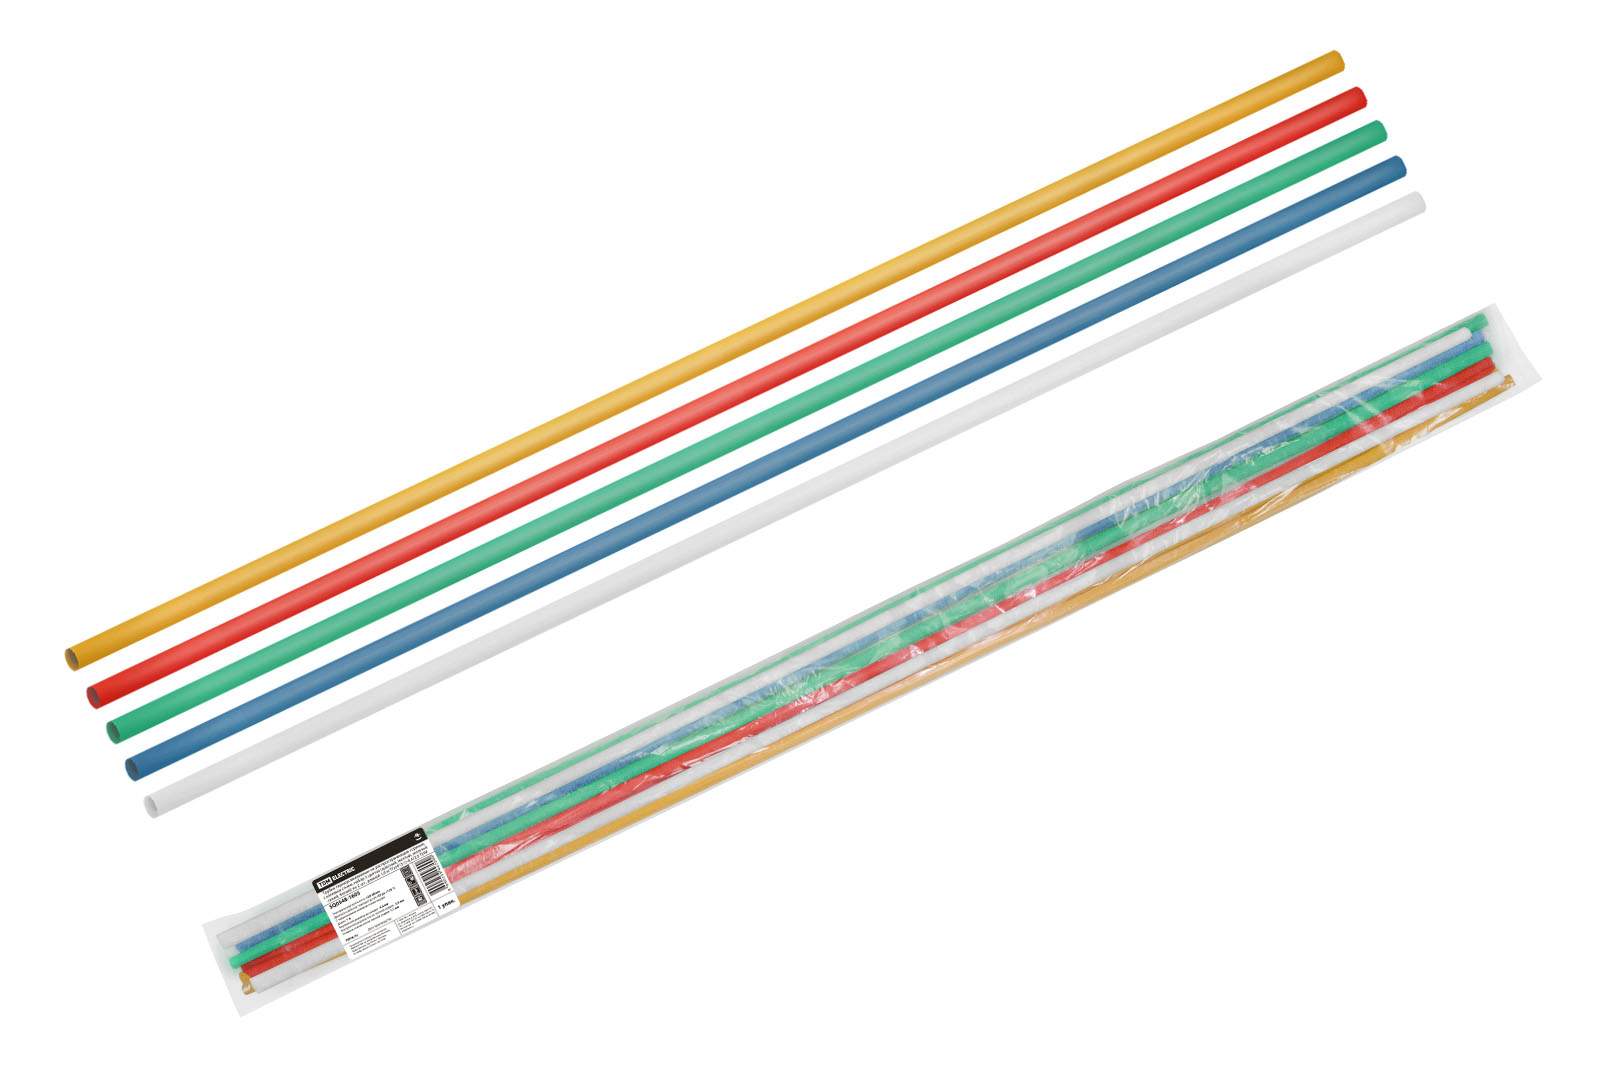 трубки термоусаживаемые, клеевые, набор 5 цветов по 2 шт. тткнг(3:1)-6,4/2,0 tdm от BTSprom.by